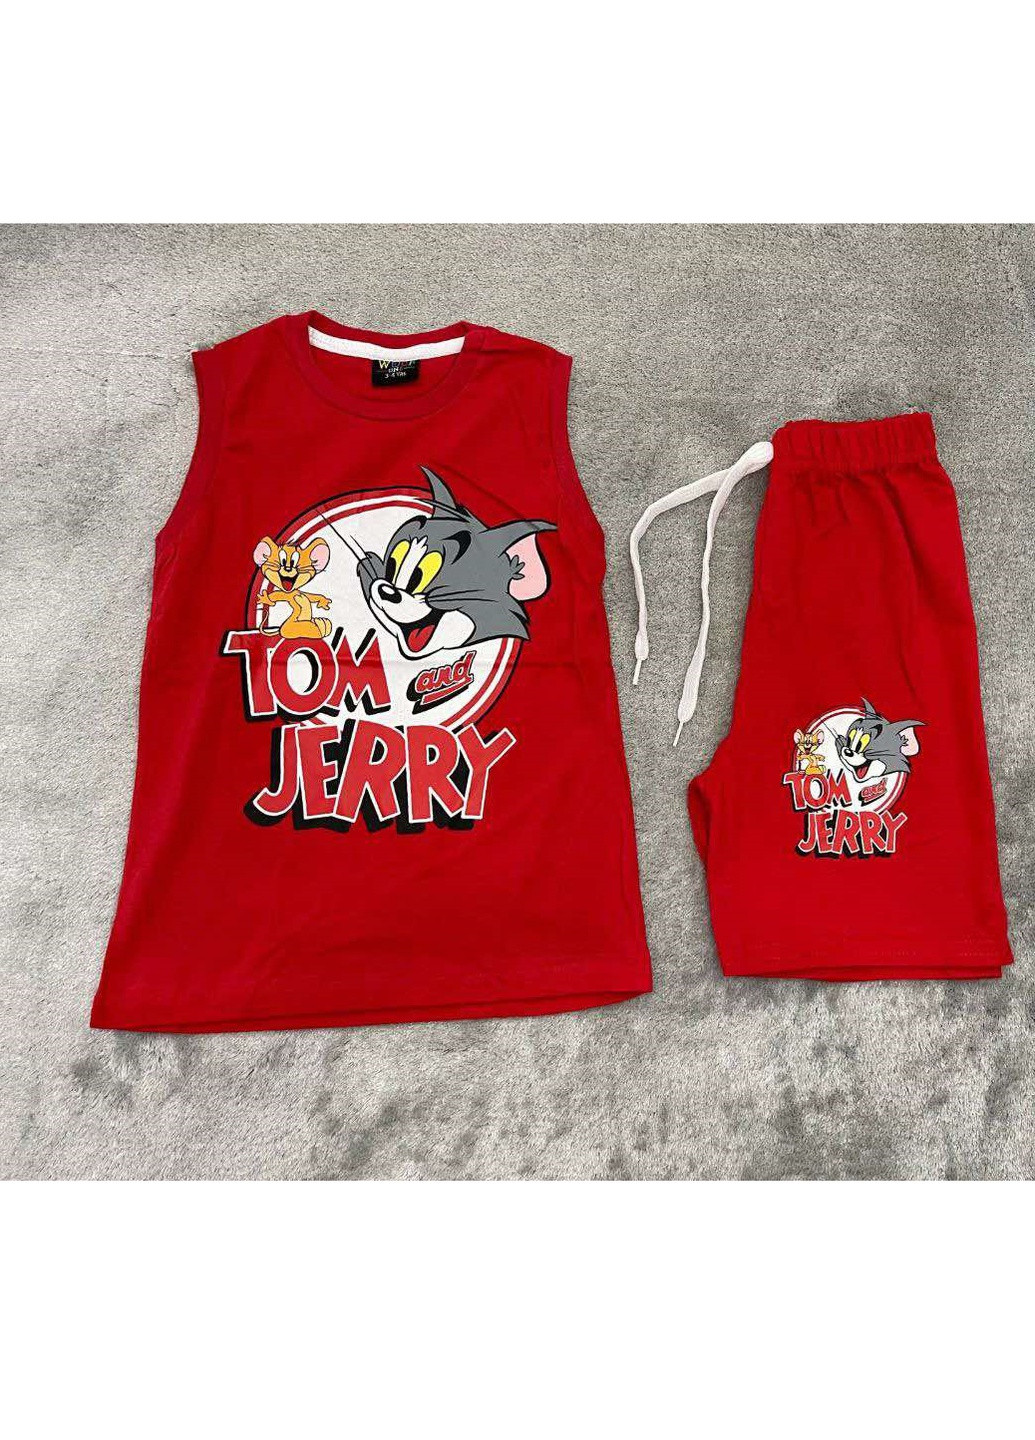 Червоний літній костюм легкий (футболка, шорти) том и джерри (tom and jerry) No Brand